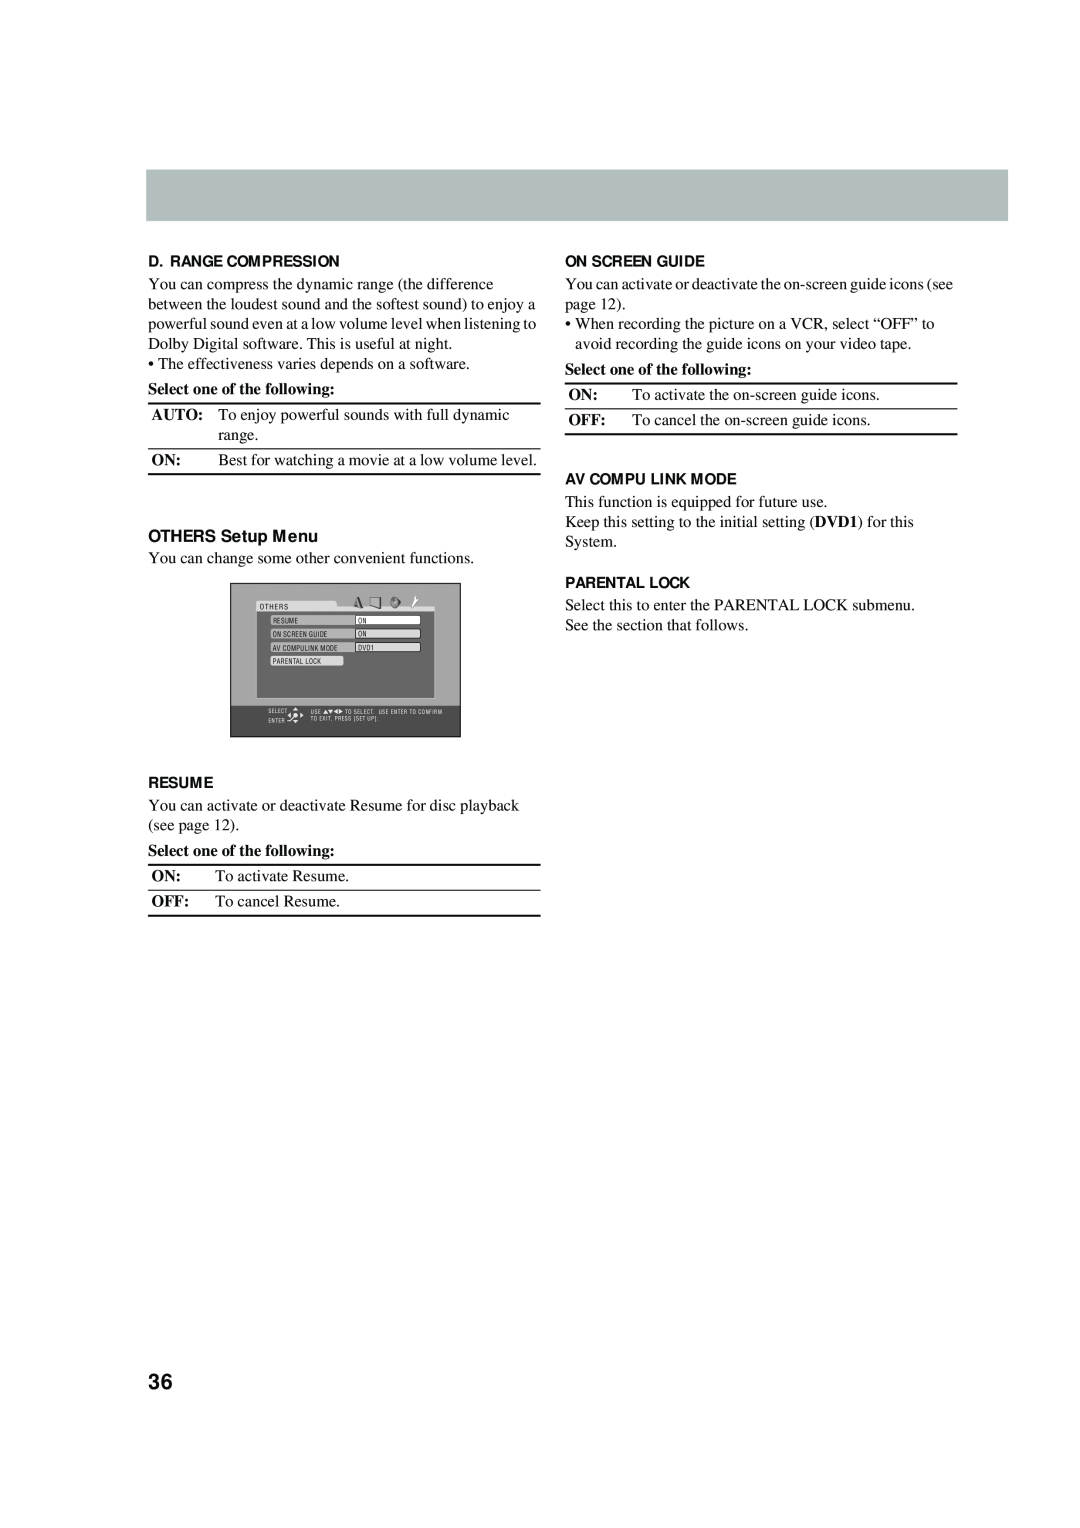 JVC UX-P550 manual OTHERS Setup Menu, D. Range Compression, Resume, On Screen Guide, Av Compu Link Mode, Parental Lock 